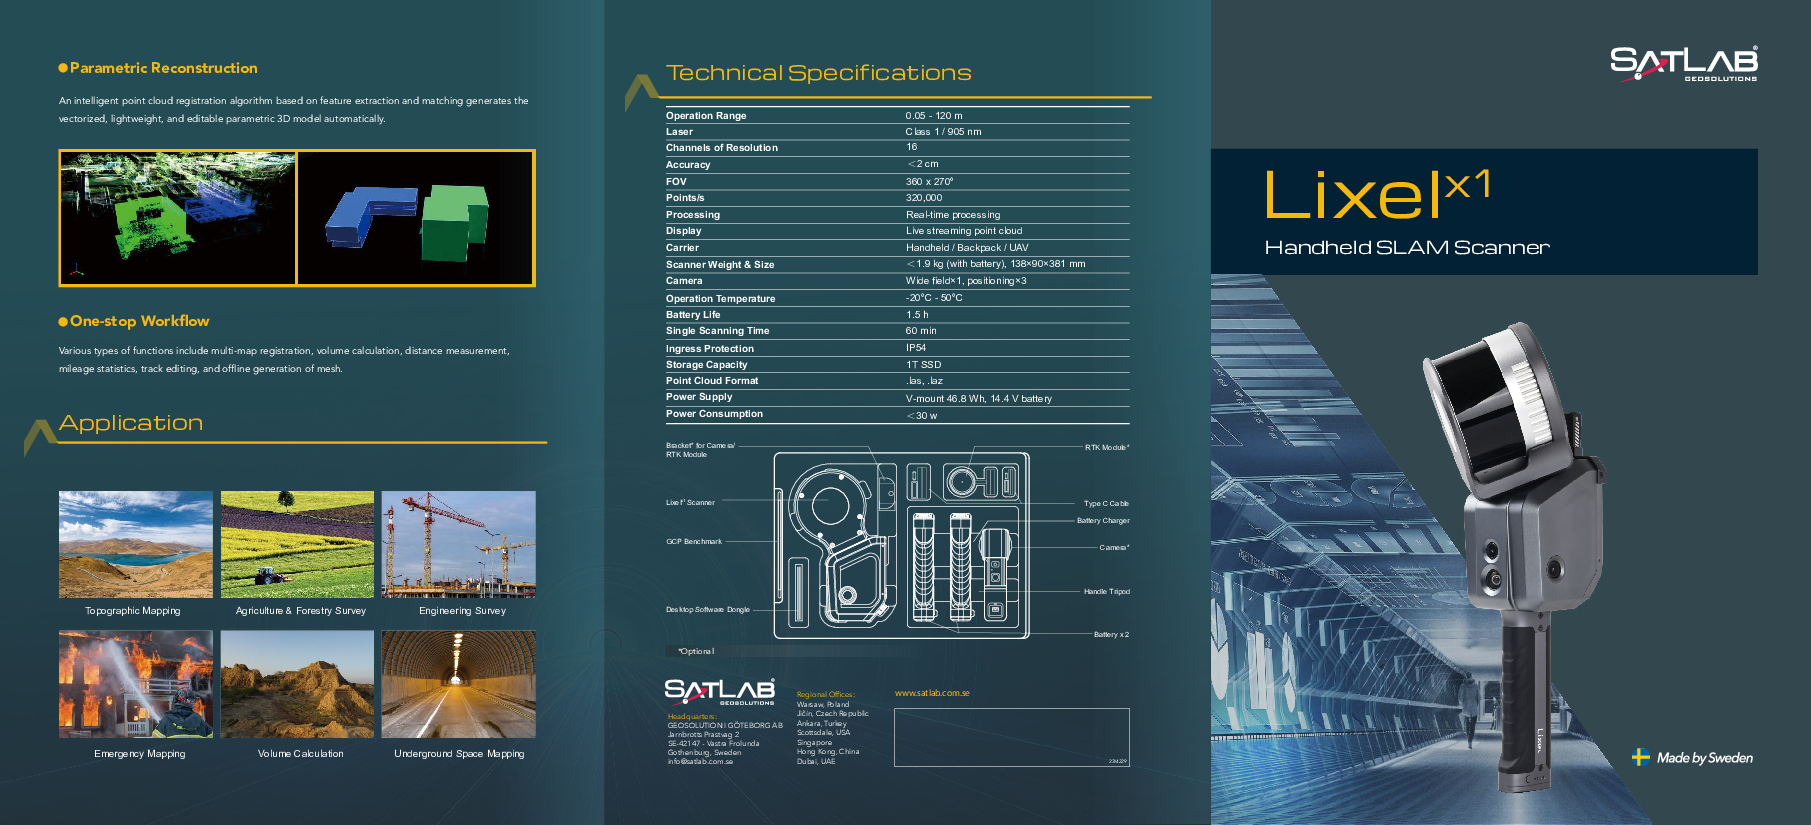 lixel-x1-handheld-slam-scanner-brochure-en-20230529.pdf